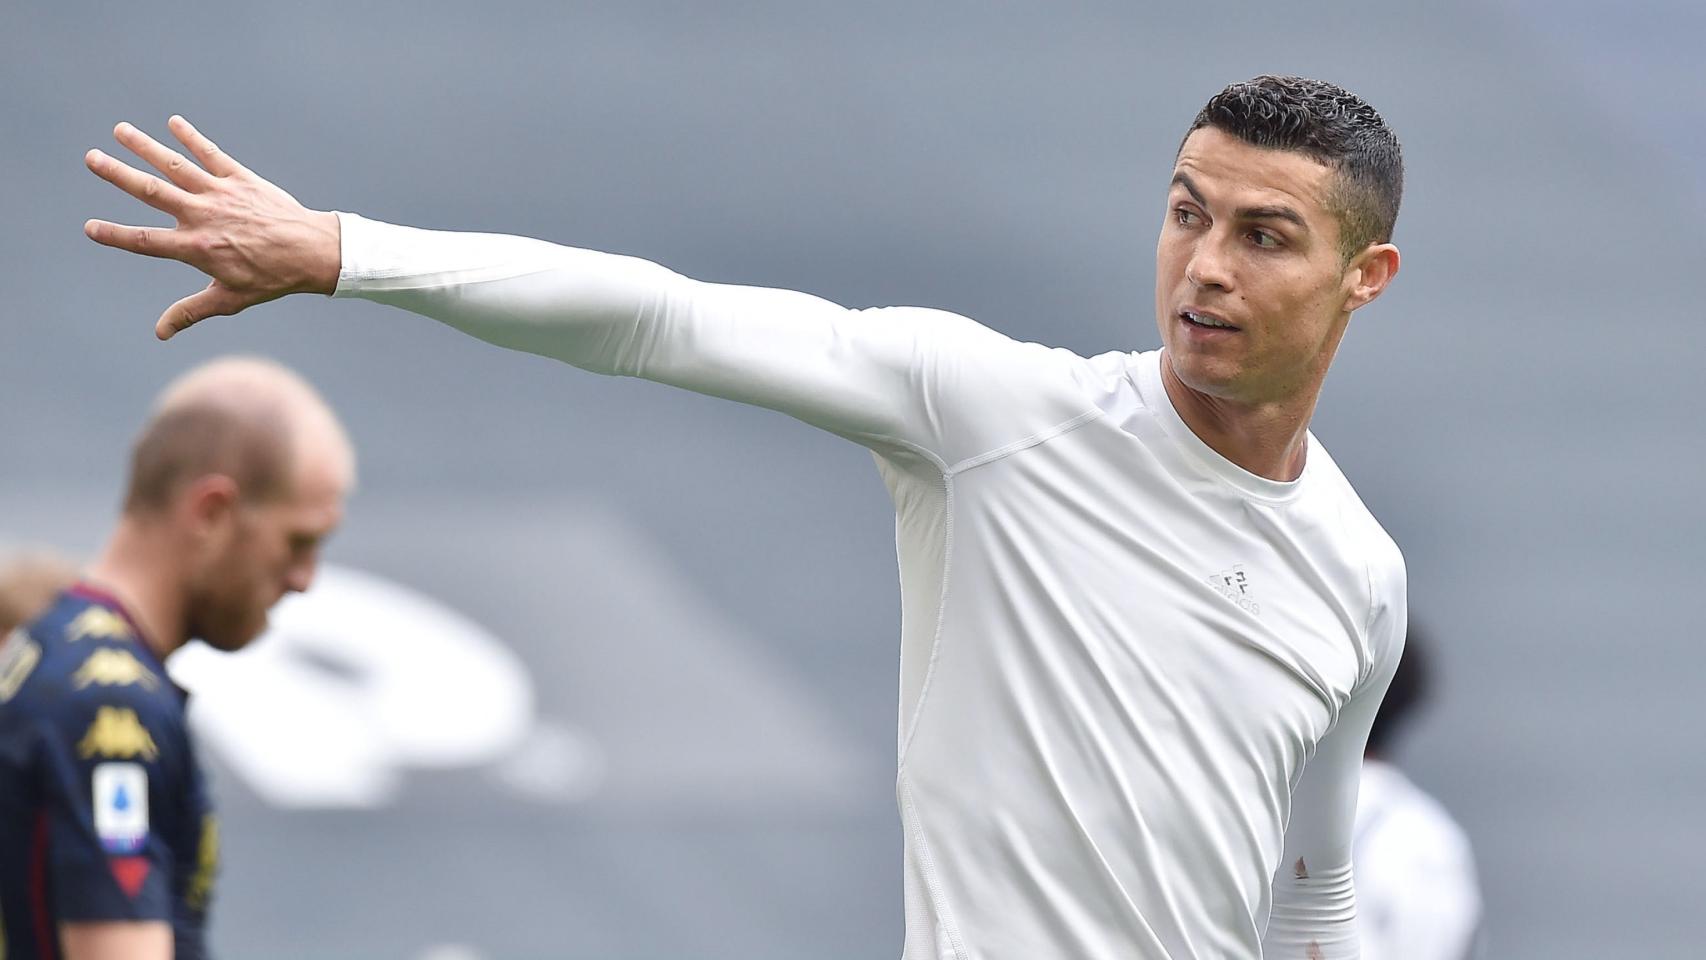 Cristiano Ronaldo obsequió su camiseta del Manchester United vs